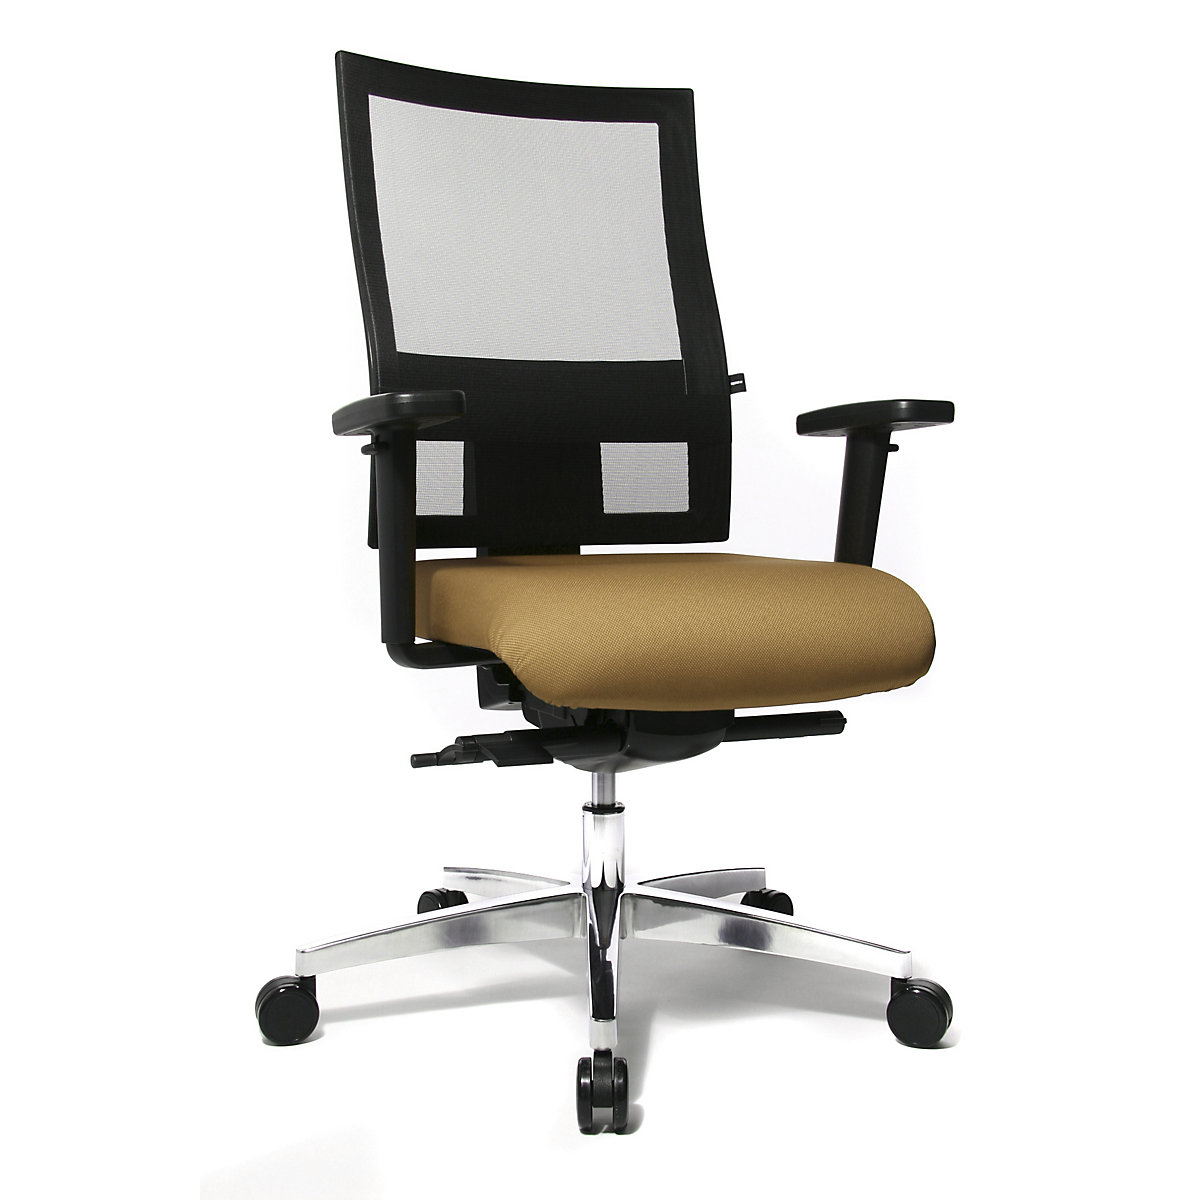 Sedia girevole da ufficio SITNESS 60 – Topstar, con schienale traspirante, braccioli inclusi, marrone chiaro / nero-5